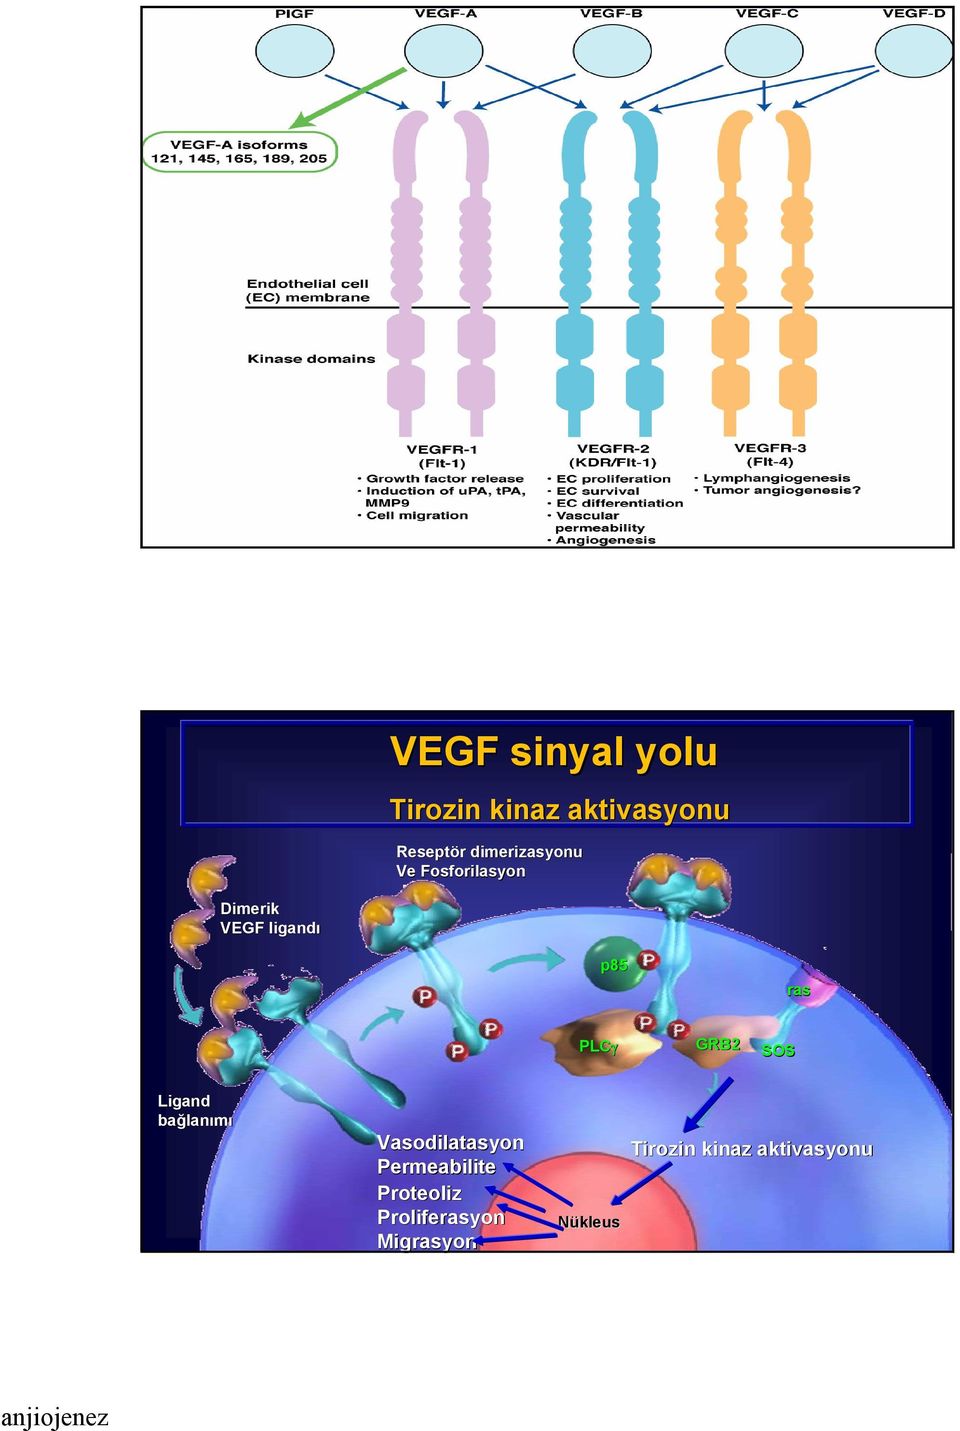 ras PLCγ GRB2 SOS Ligand bağlanımı Vasodilatasyon asyon